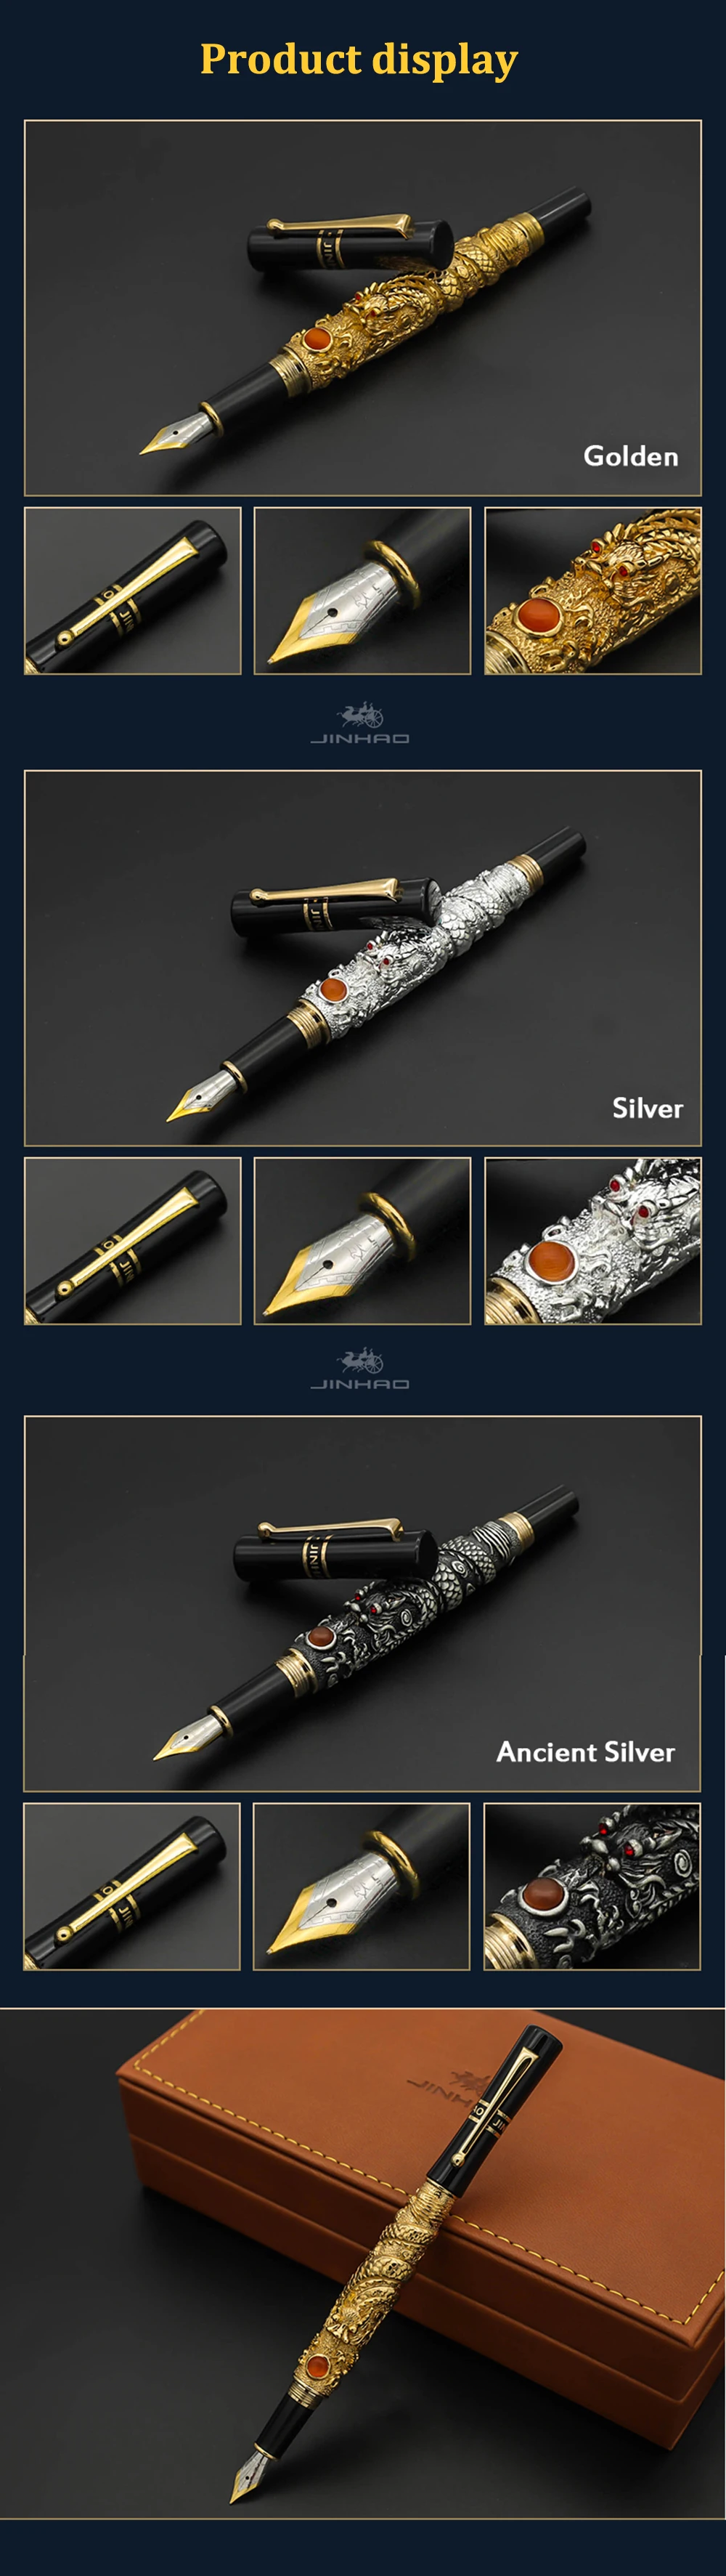 JinHao перьевая ручка Ретро Дракон металл 0.5 мм чернильная ручки для письма канцелярия принадлежности коллекция